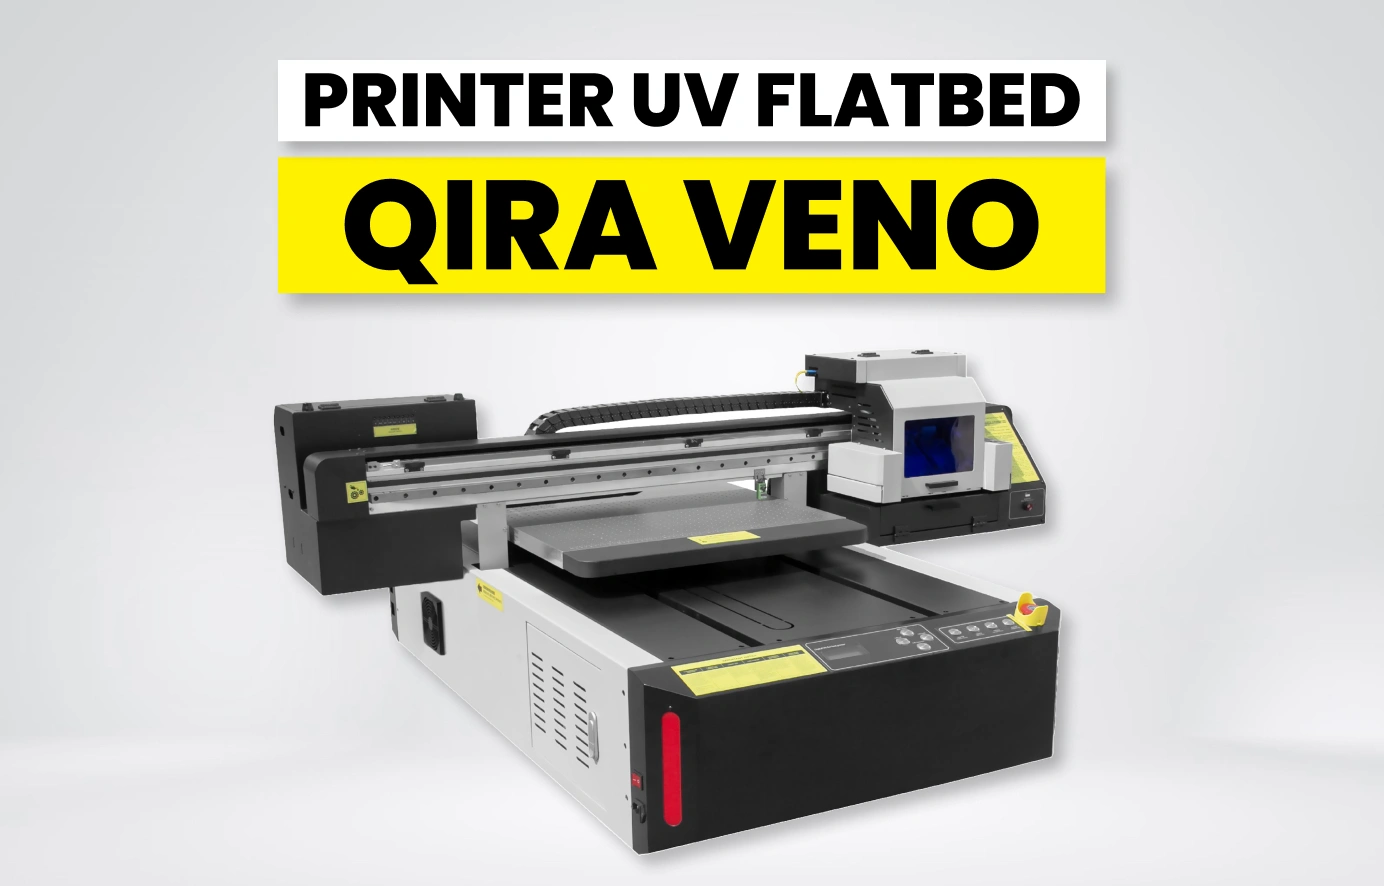 Printer Uv Flatbed Qira Veno